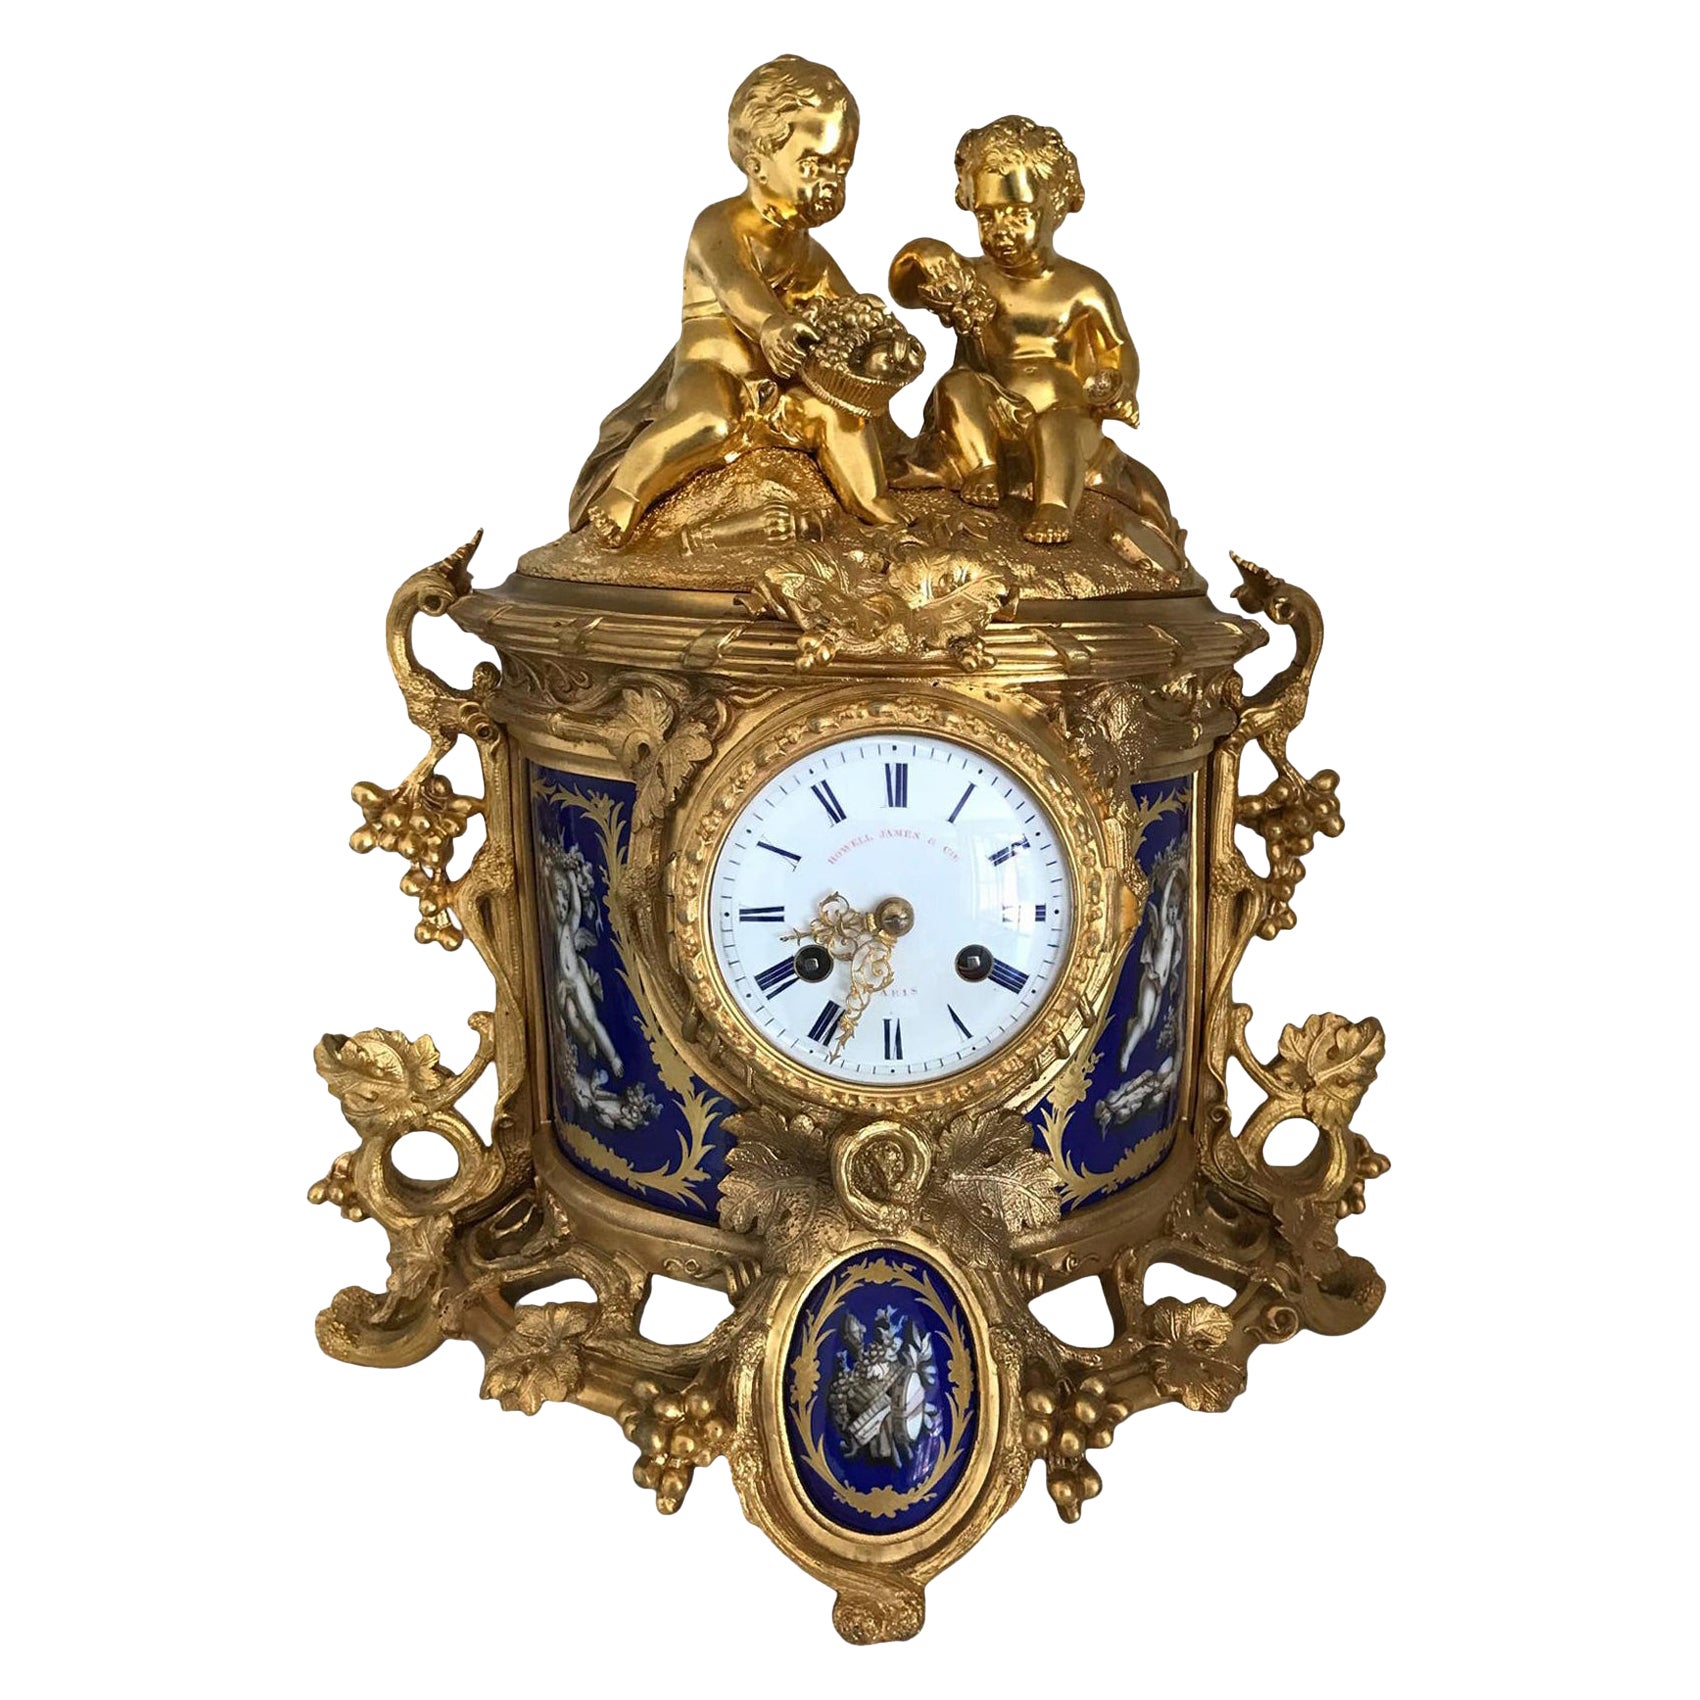 Ormolu Mantel Clock, Retailed by Howell James London & Paris, 19th Century